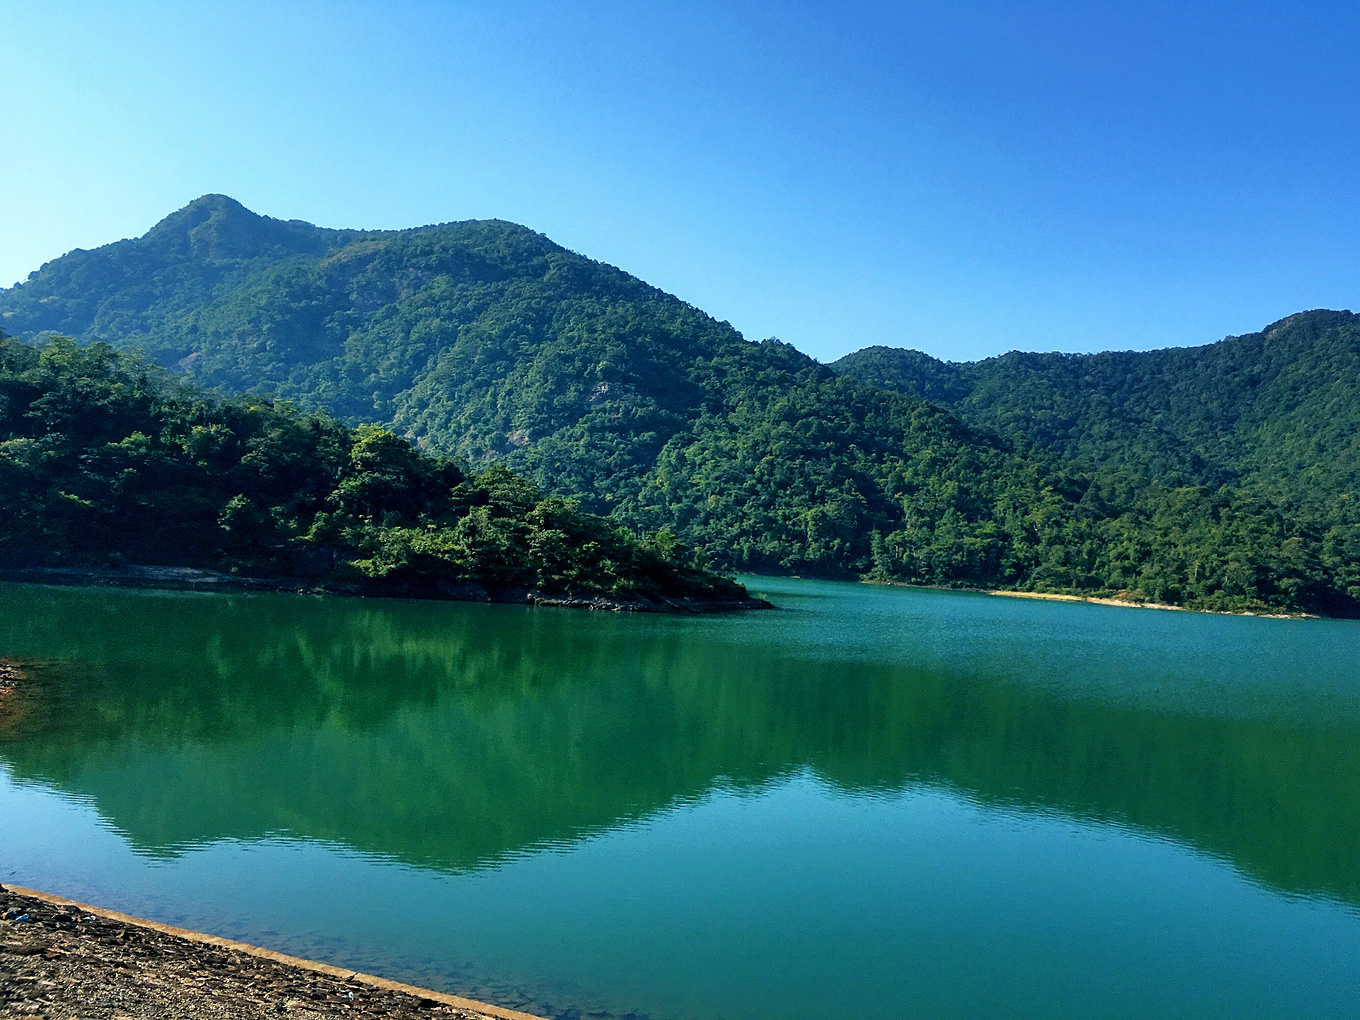 【携程攻略】广州白水寨风景名胜区景点,主要是爬山和亲水，总共9999级，适合登山健身，游览区是木阶梯，一路…